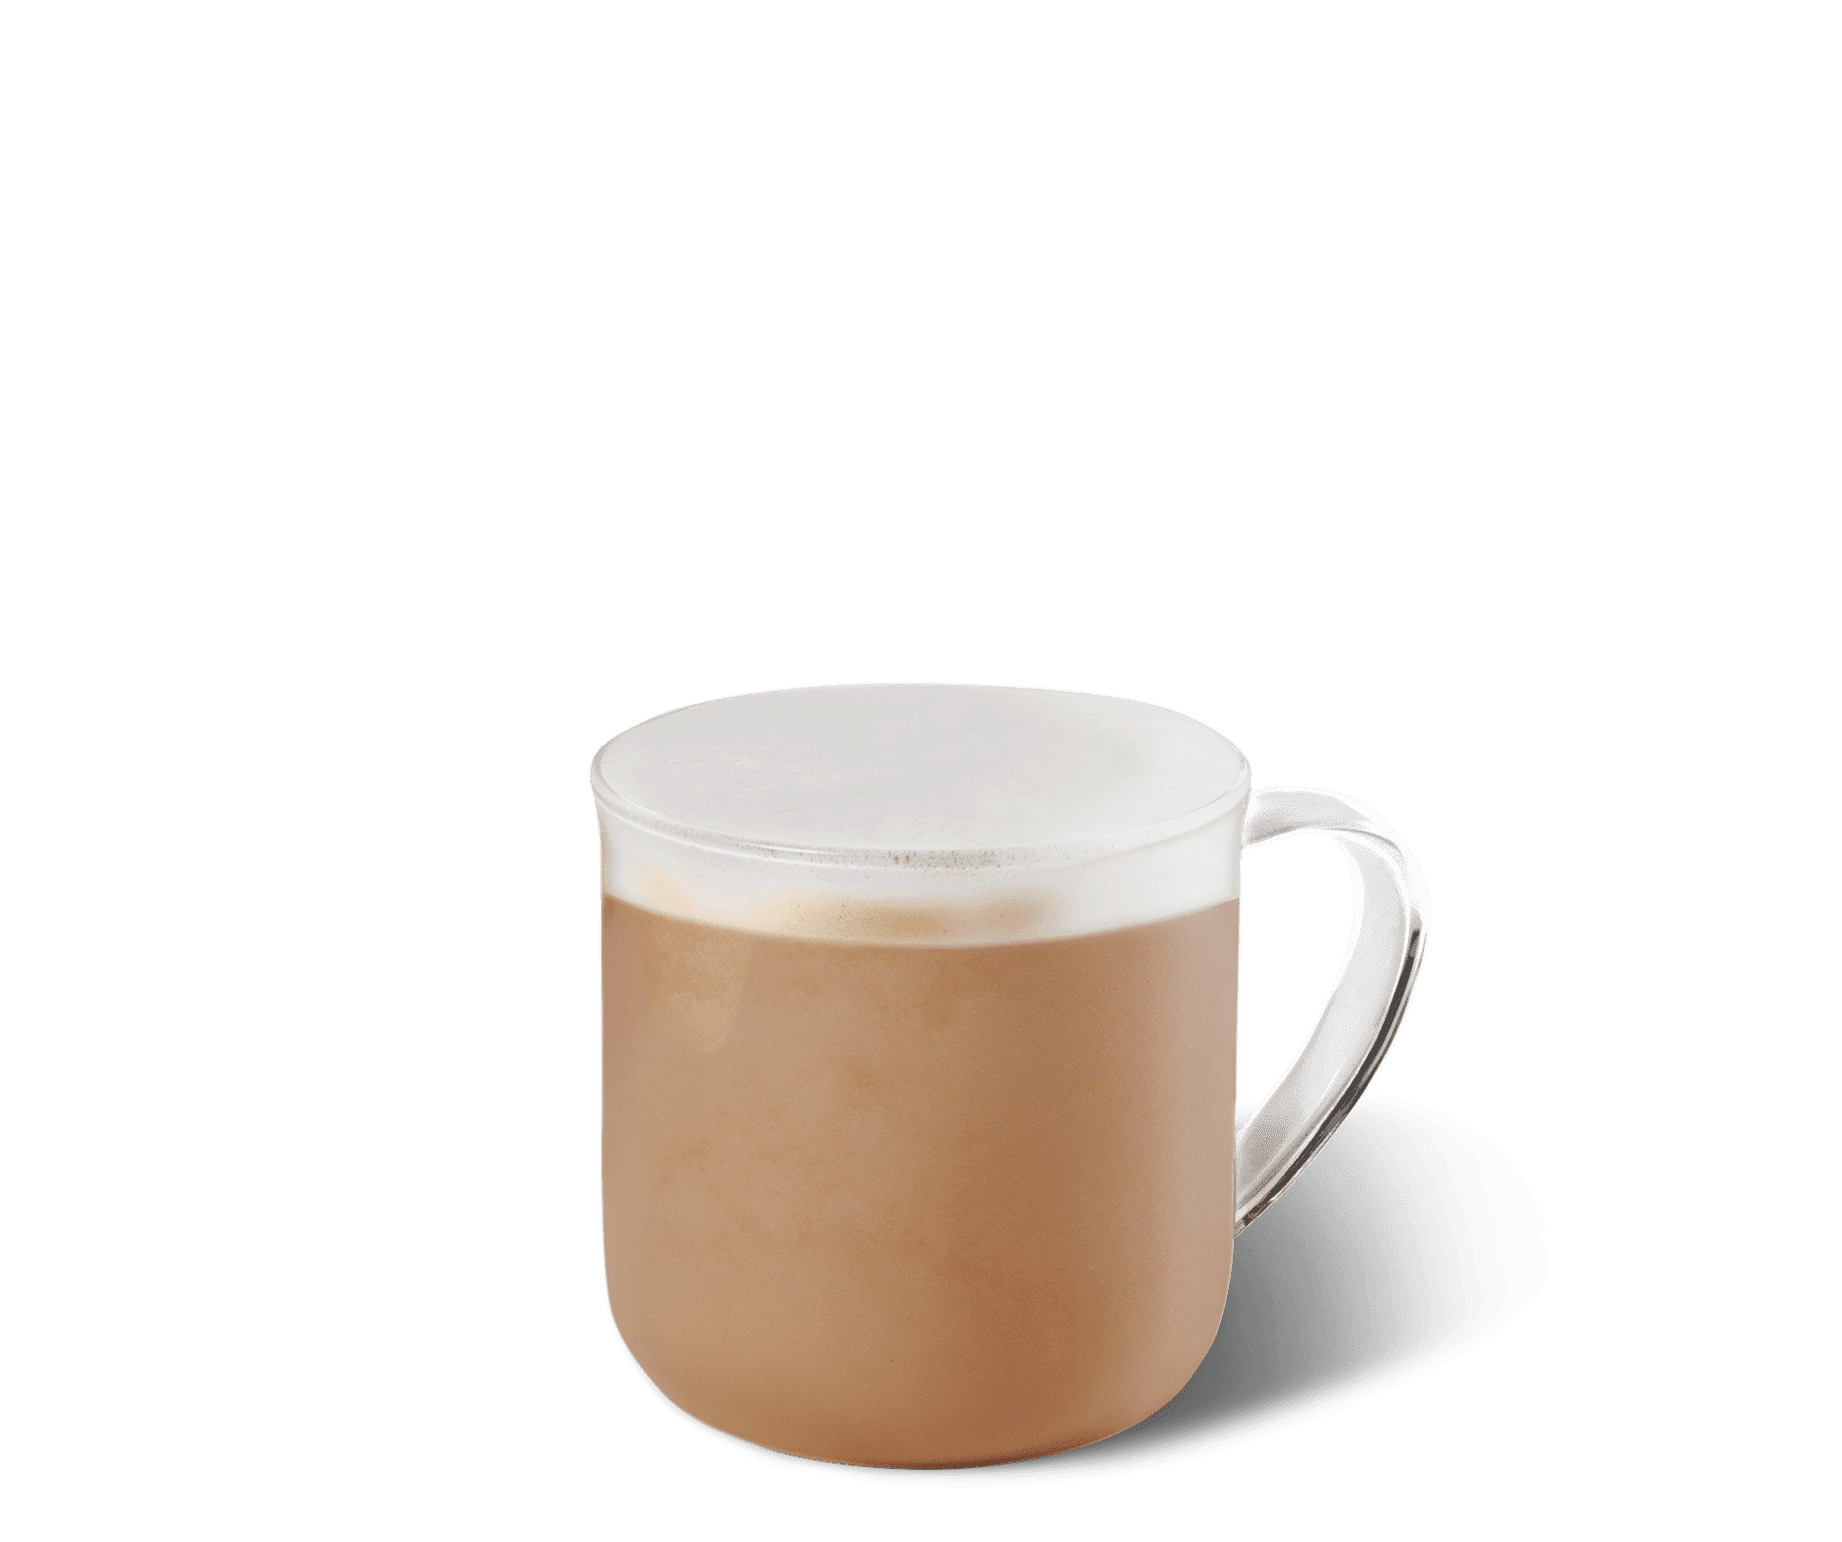 Starbucks Blonde Vanilla Latte